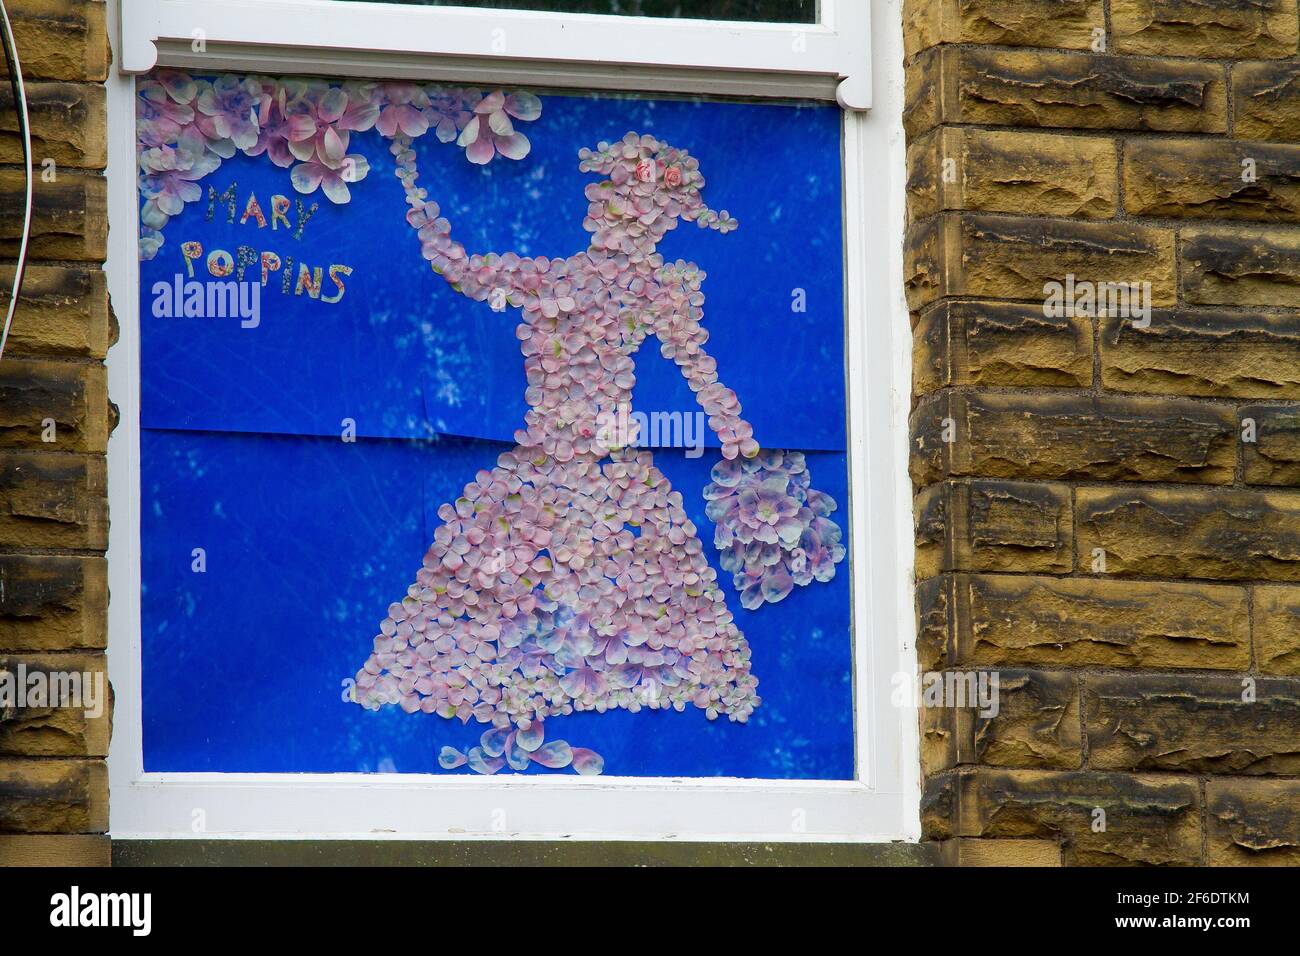 Honley, Holmfirth, Yorkshire, Regno Unito, 31 marzo 2021. Mostra di Alice nel paese delle meraviglie nella finestra del Gallery Cafe, parte del percorso del libro intrecciato di Honley. Utilizzando materiali eco-friendly e riciclati, come i vecchi vestiti/tessuti, gli abitanti del villaggio e le aziende hanno creato una scena o un personaggio da un libro preferito da esporre nel loro giardino o finestra, per creare un percorso locale da Domenica 28 marzo a Lunedi 5 aprile. Questo evento fa parte del Festival della letteratura di Huddersfield e offre premi per i vincitori della zona e un hamper letterario/faodie per un vincitore assoluto. RASQ Photography/Alamy Live News. Foto Stock